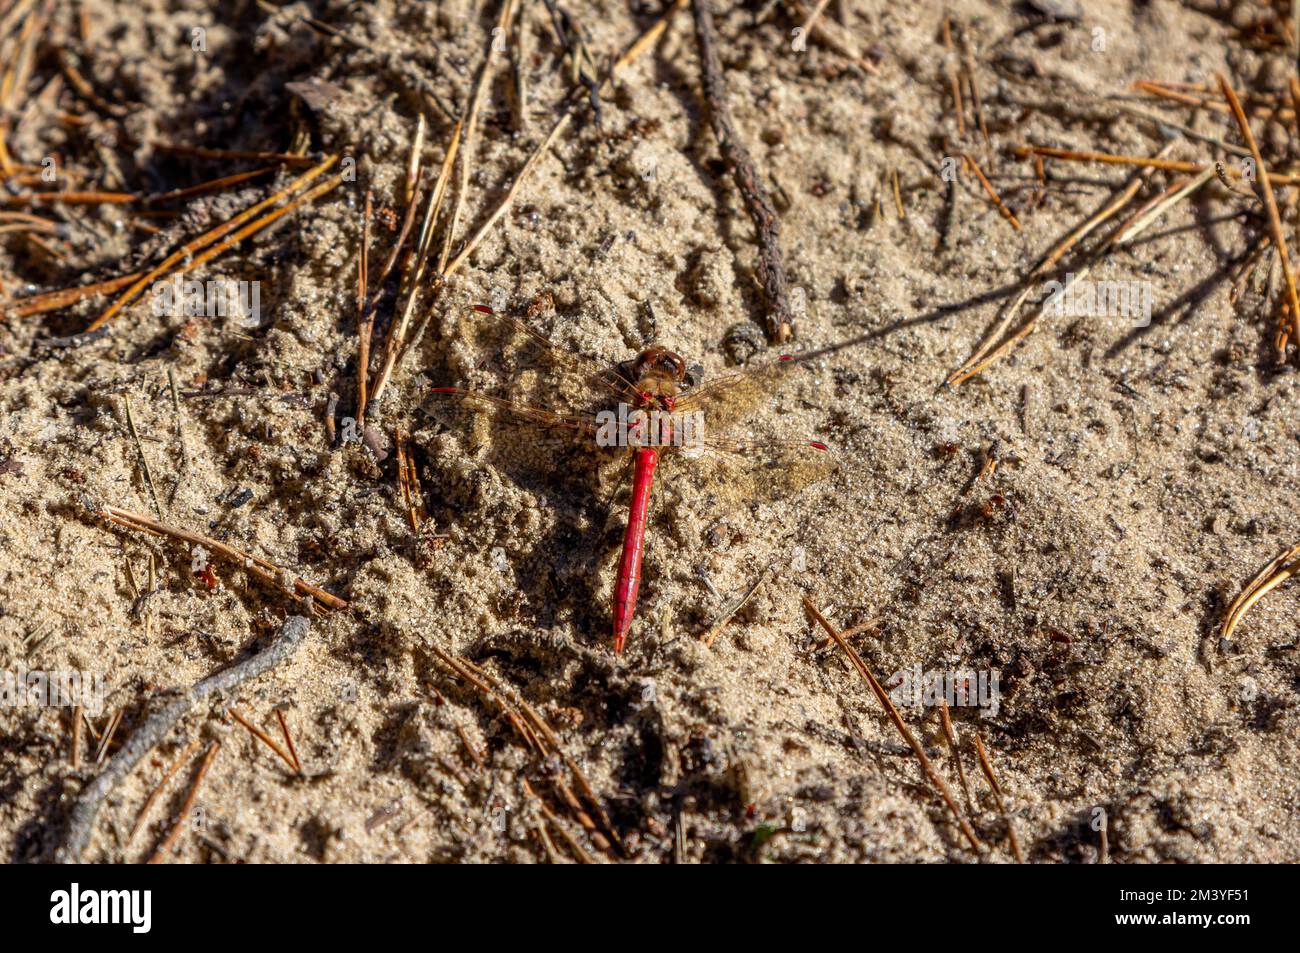 Primo piano libellula con corpo rosso e ali trasparenti sulla sabbia Foto Stock